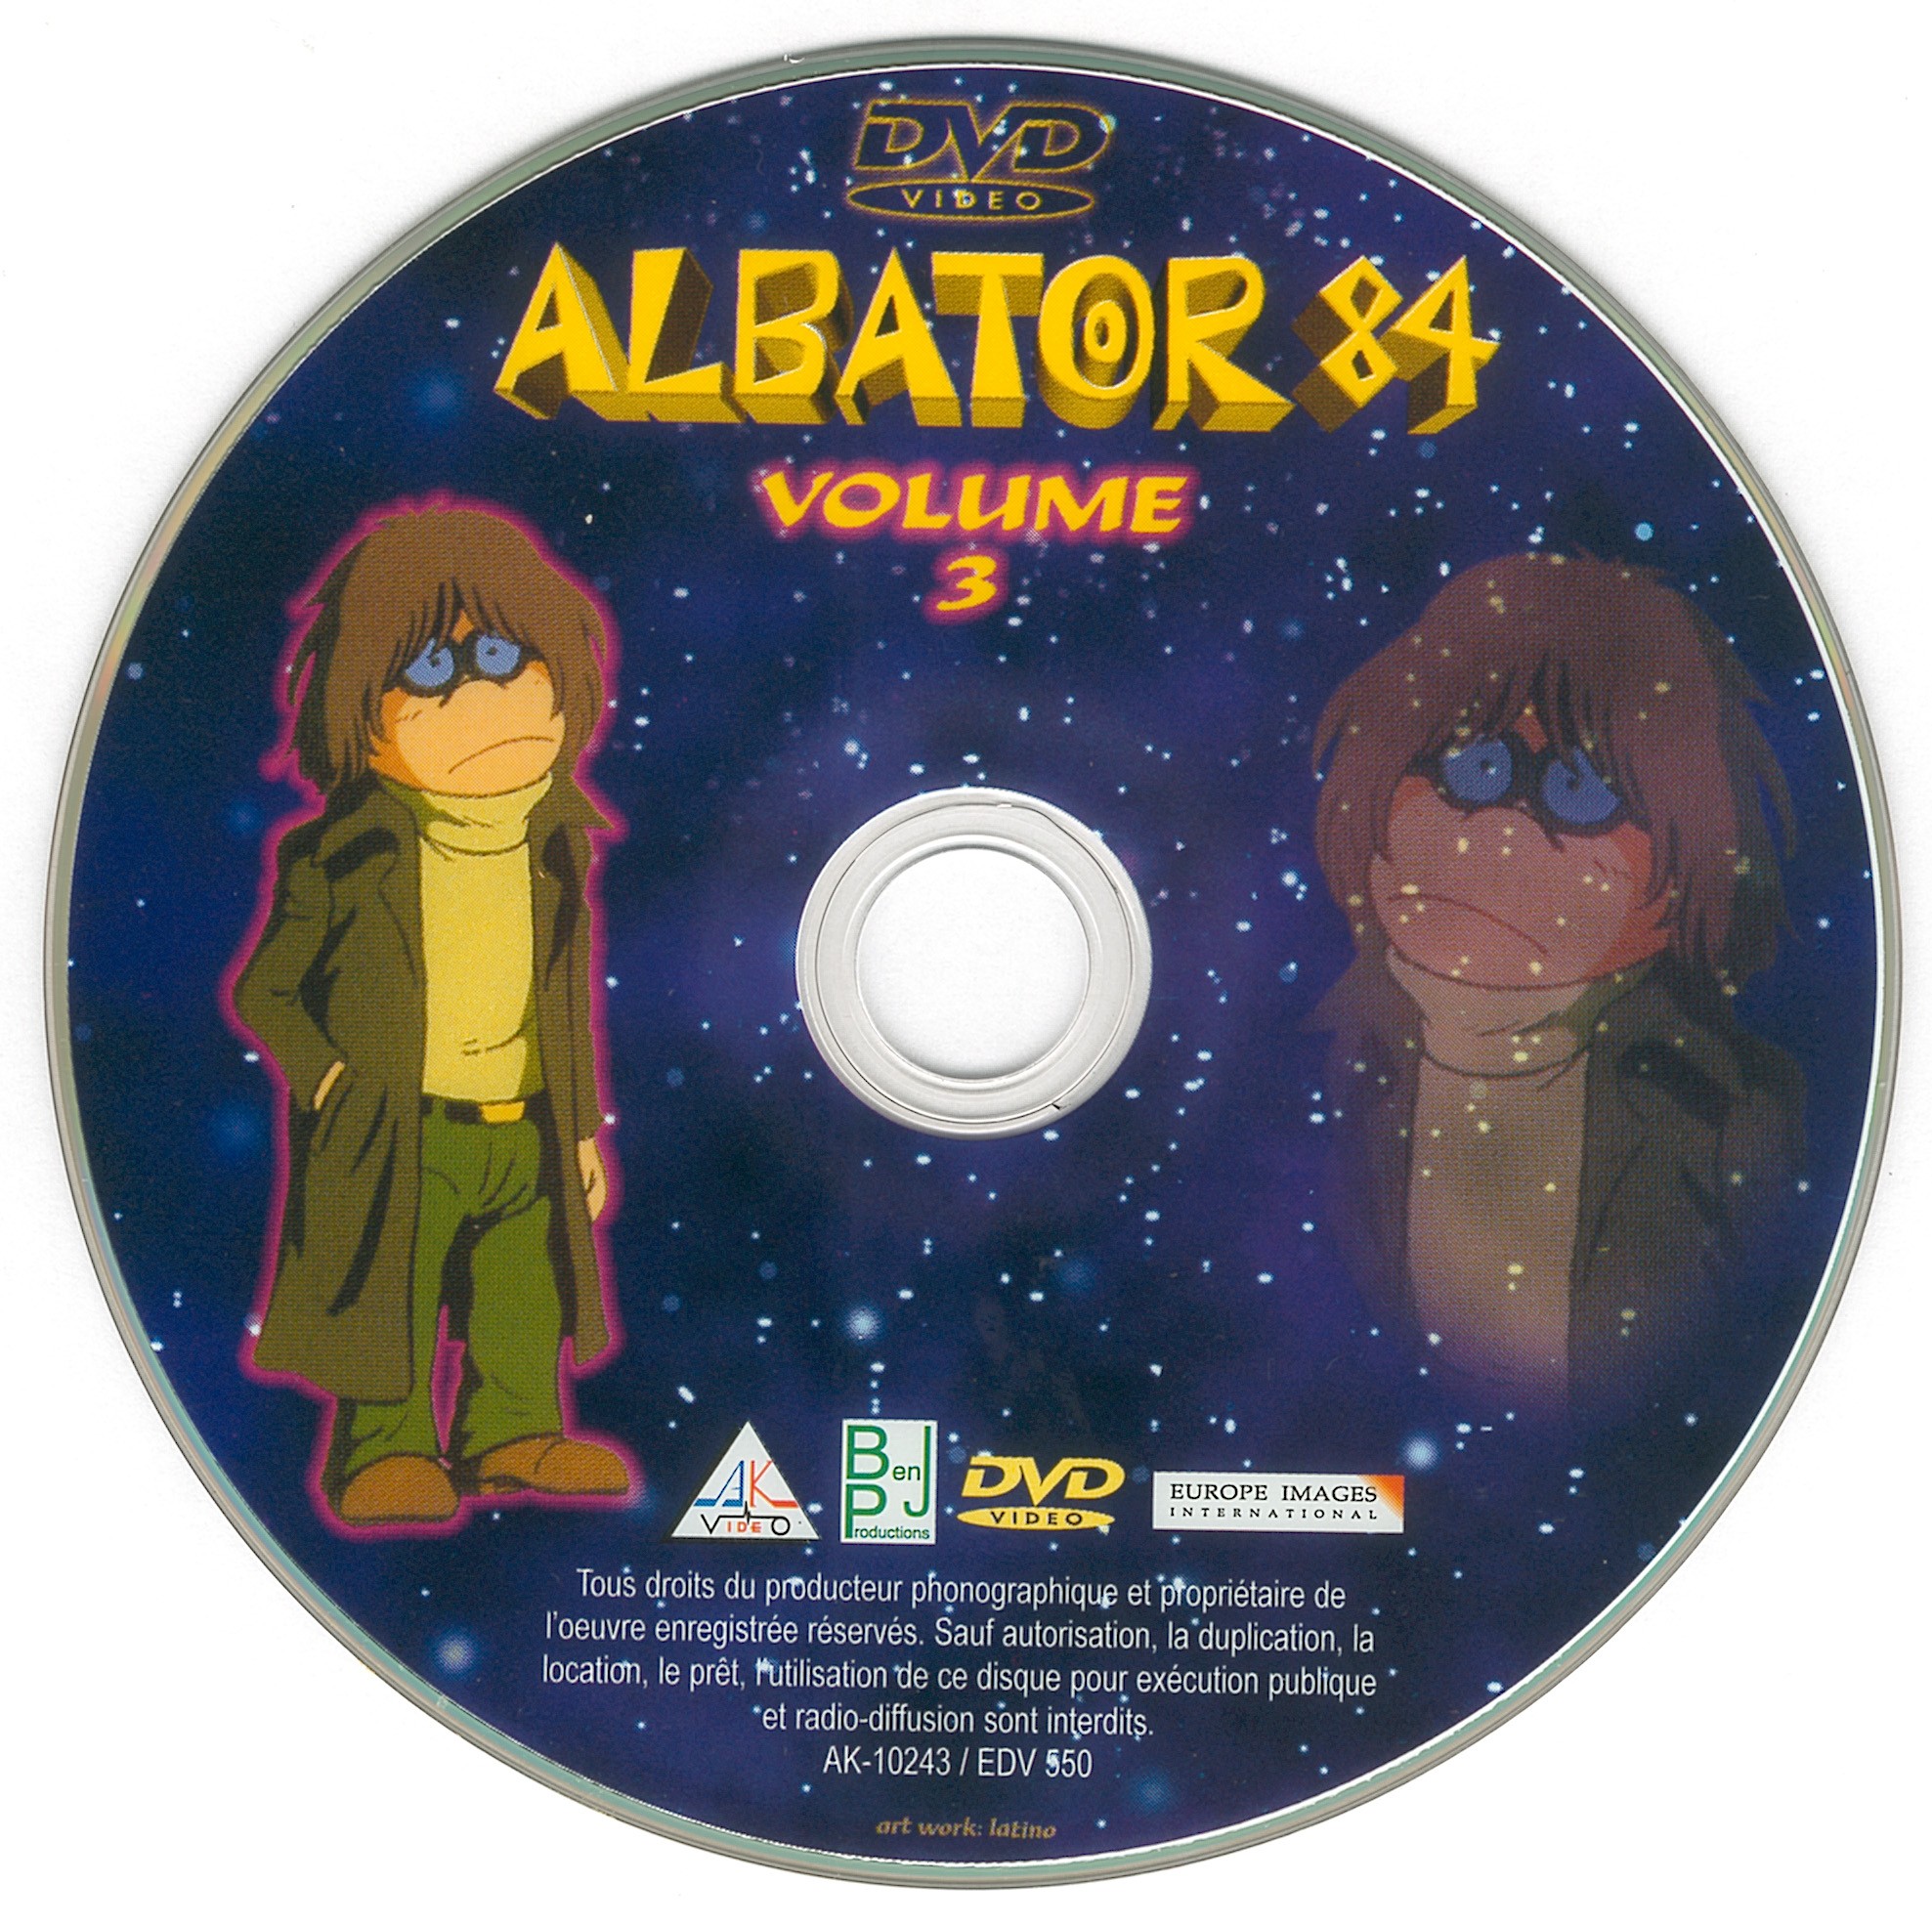 Albator 84 vol 3